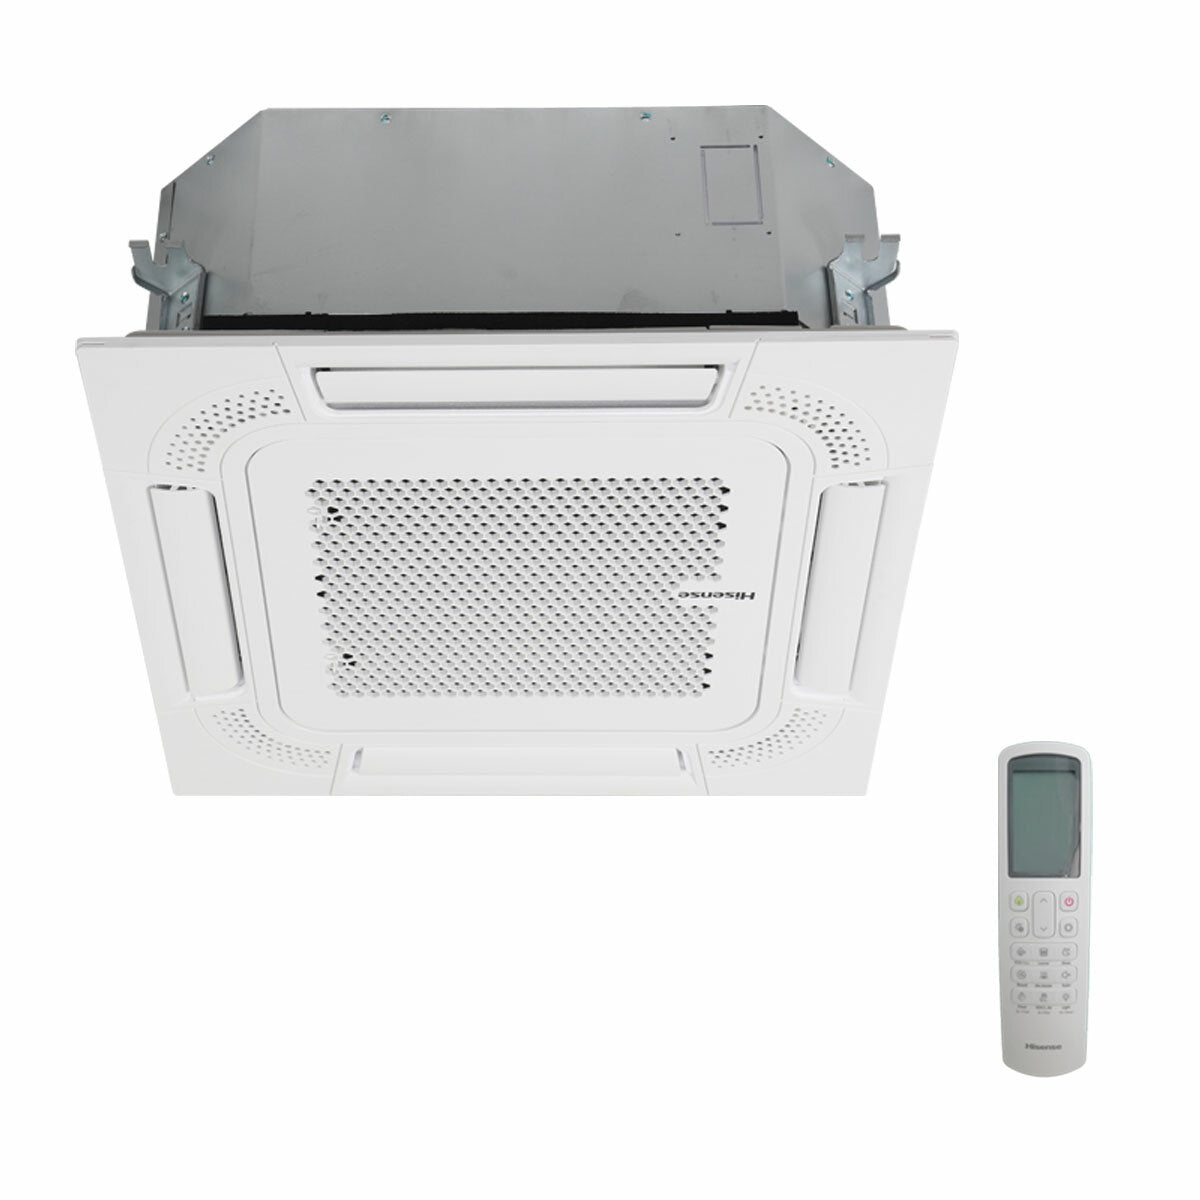 Hisense air conditioner Cassette ACT quadri split 12000+12000+12000+12000 BTU inverter A++ outdoor unit 10 kW